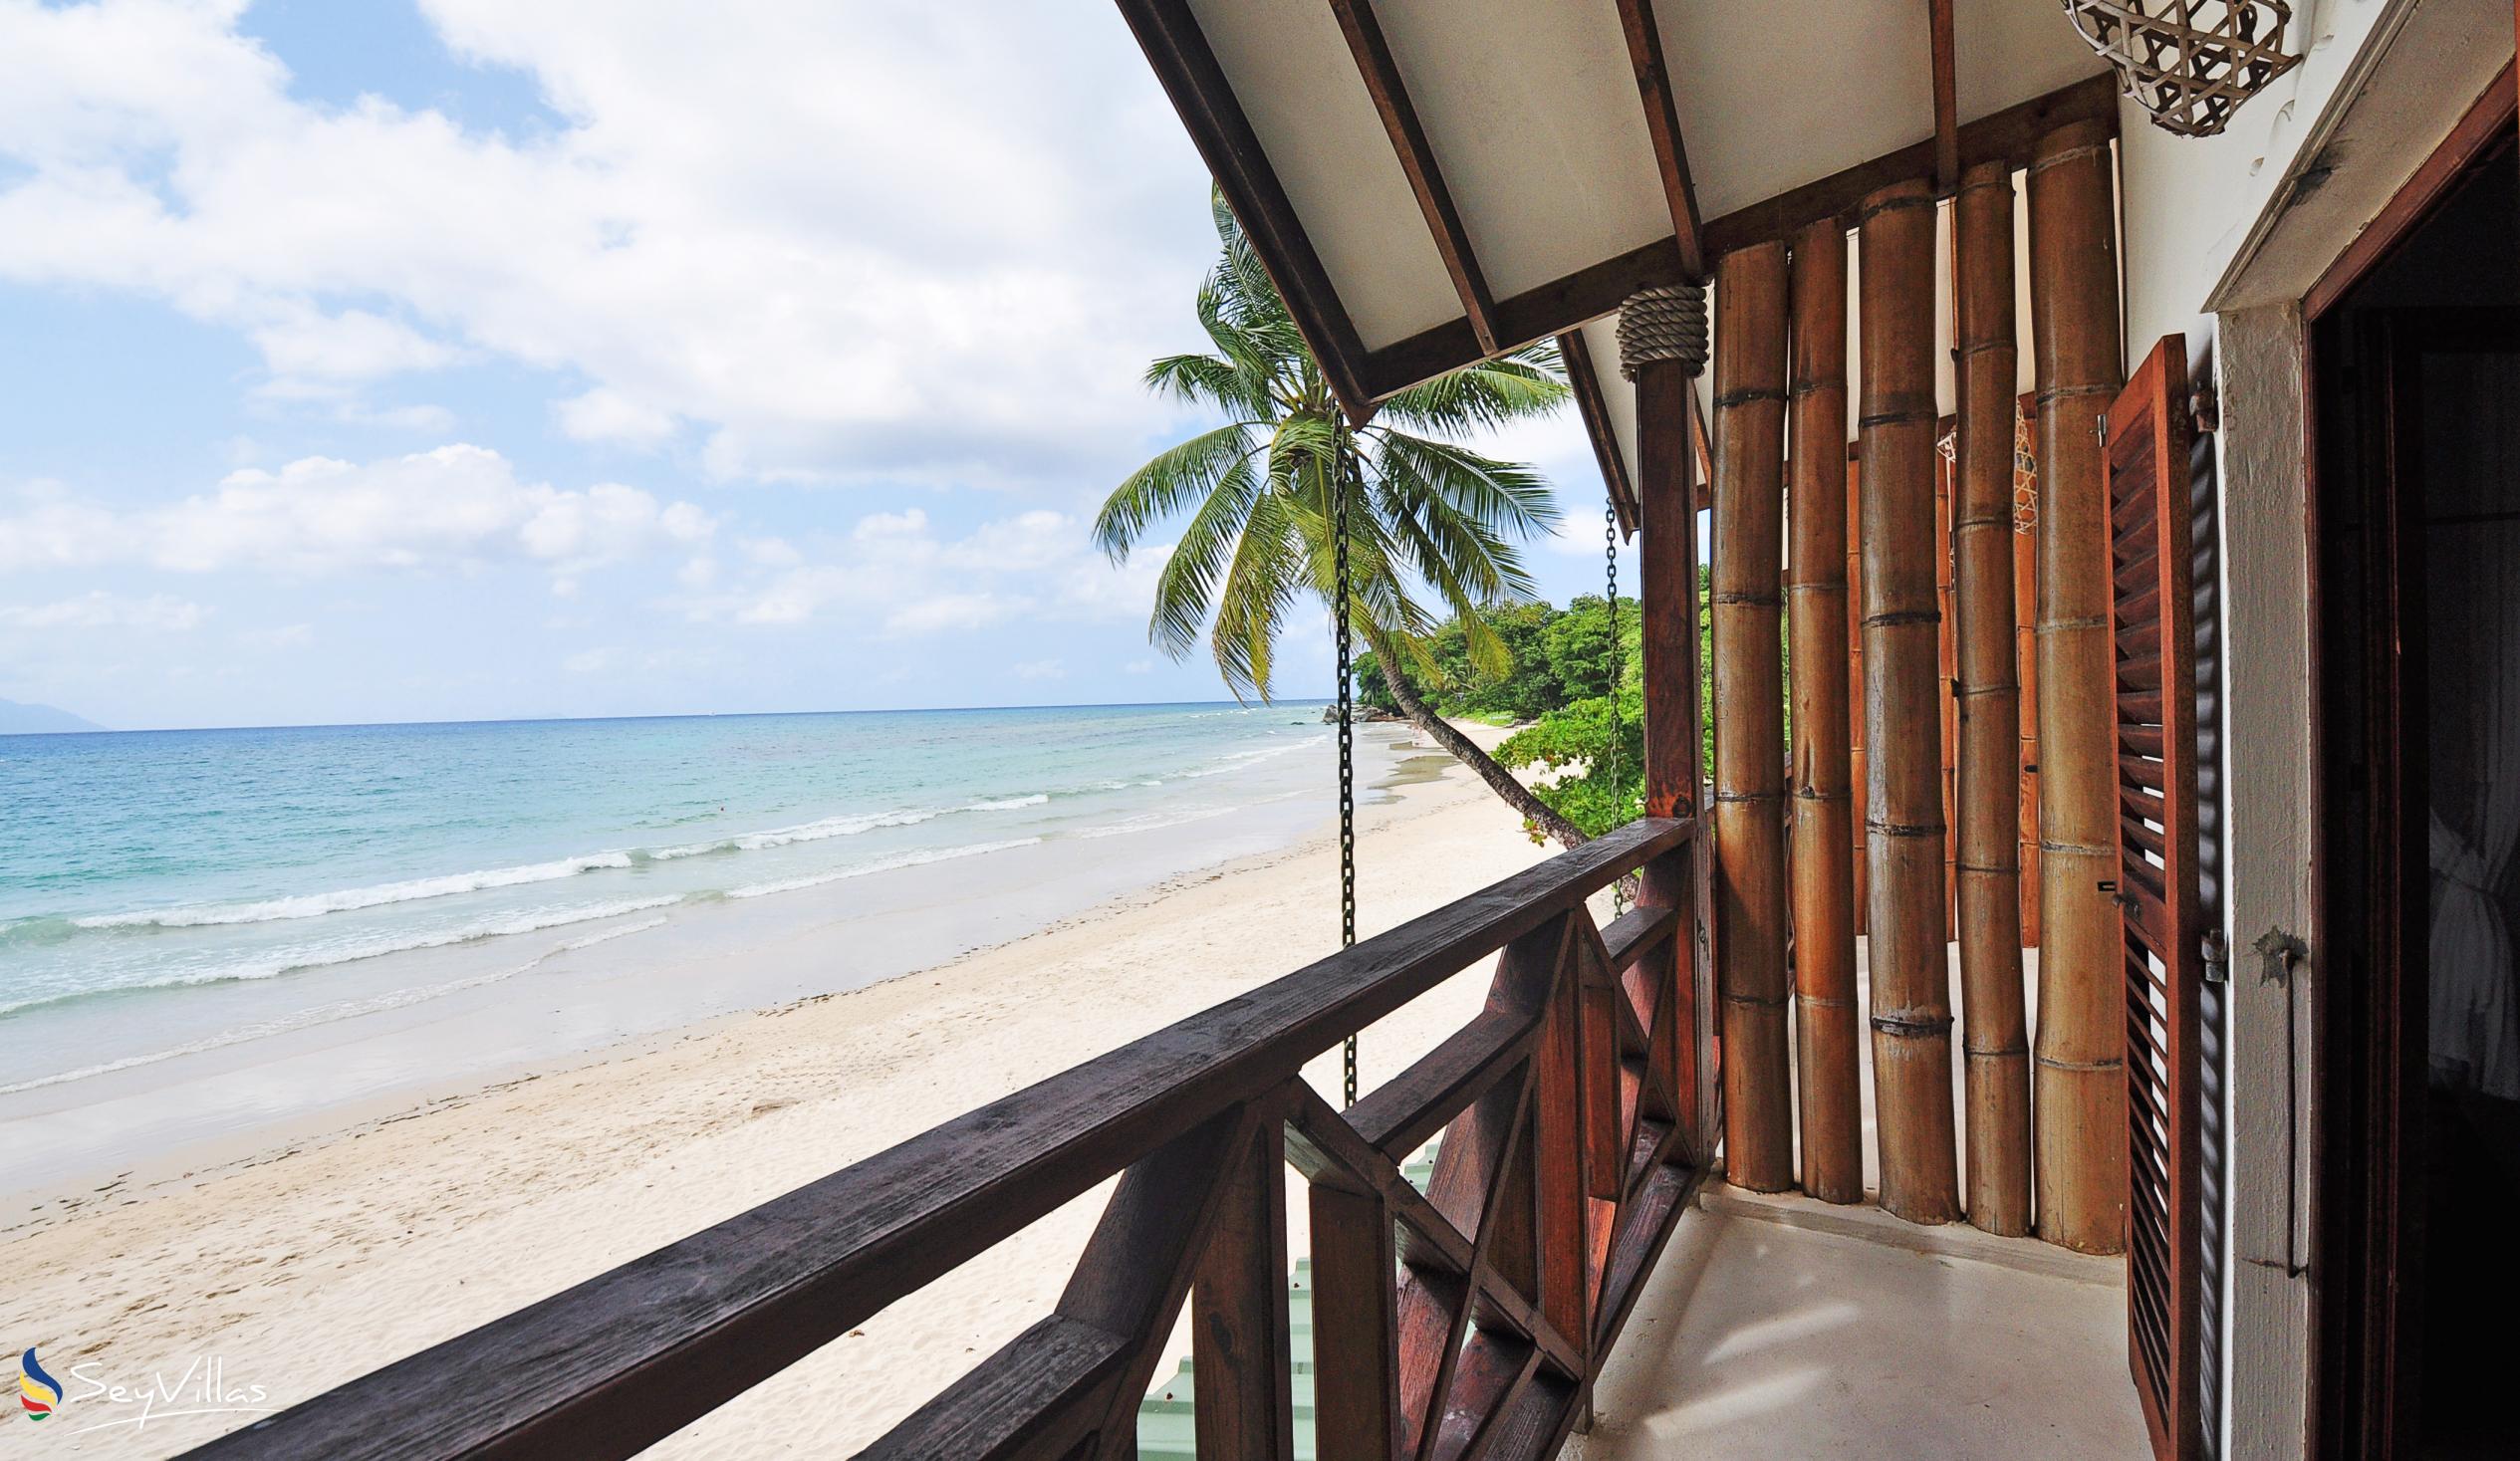 Foto 14: Clef des Iles - Strand-Duplex mit 2 Schlafzimmern - Mahé (Seychellen)